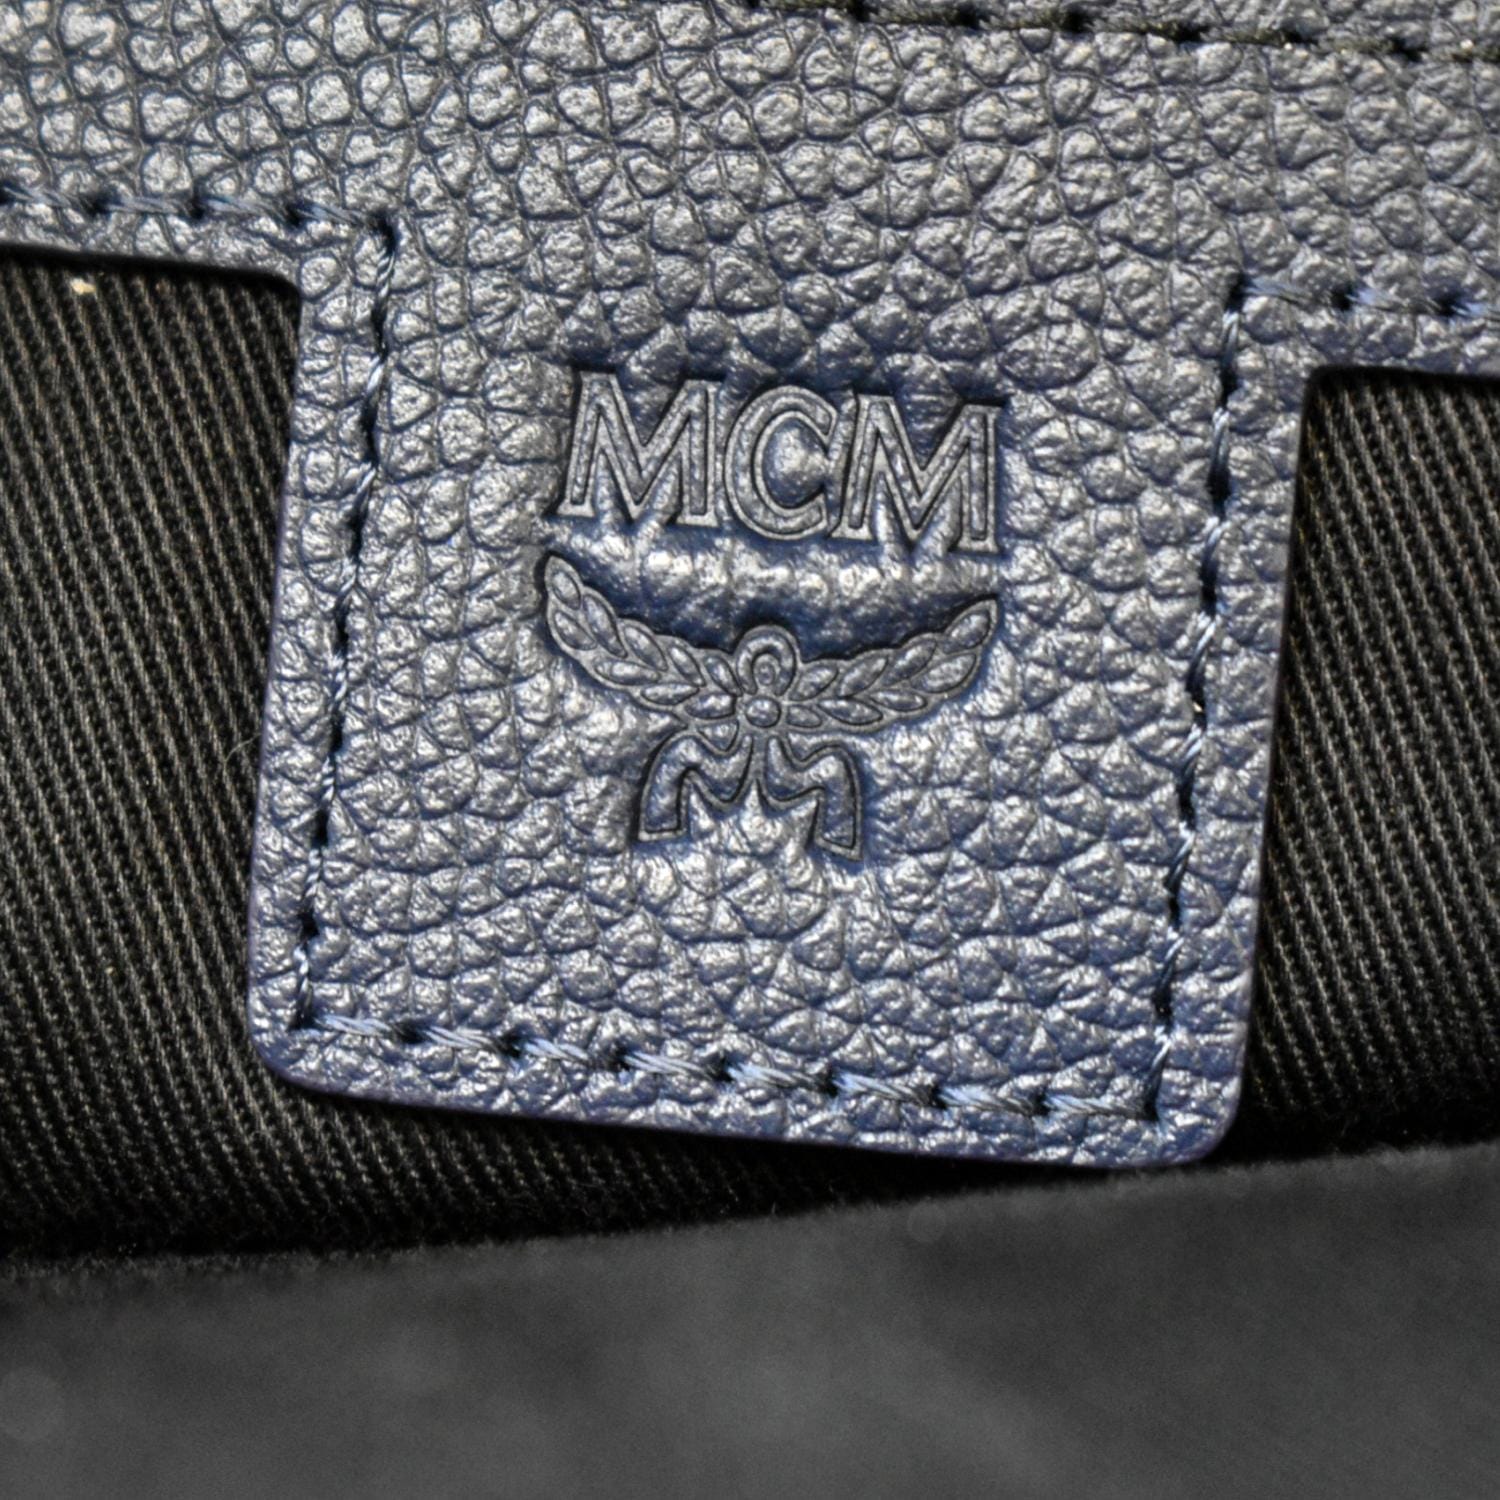 MCM Visetos Studded Colorblock Stark Brock Backpack Blue 1263933